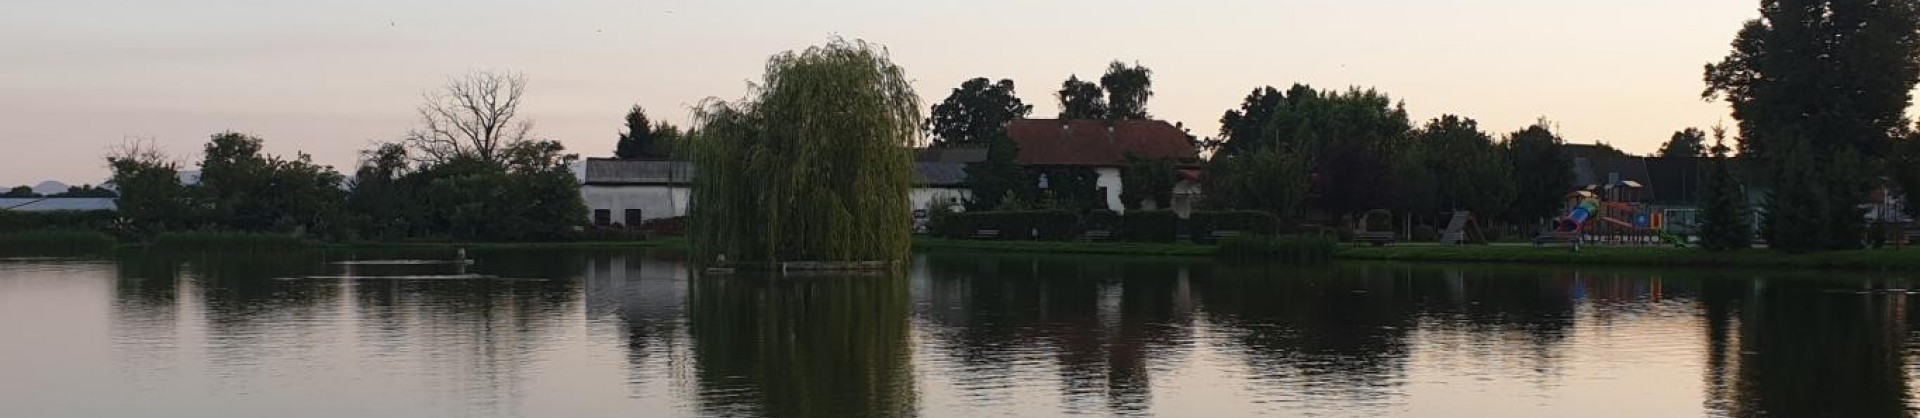 Maribor hotinjski ribniki moja jezera manca korelc 6 sl